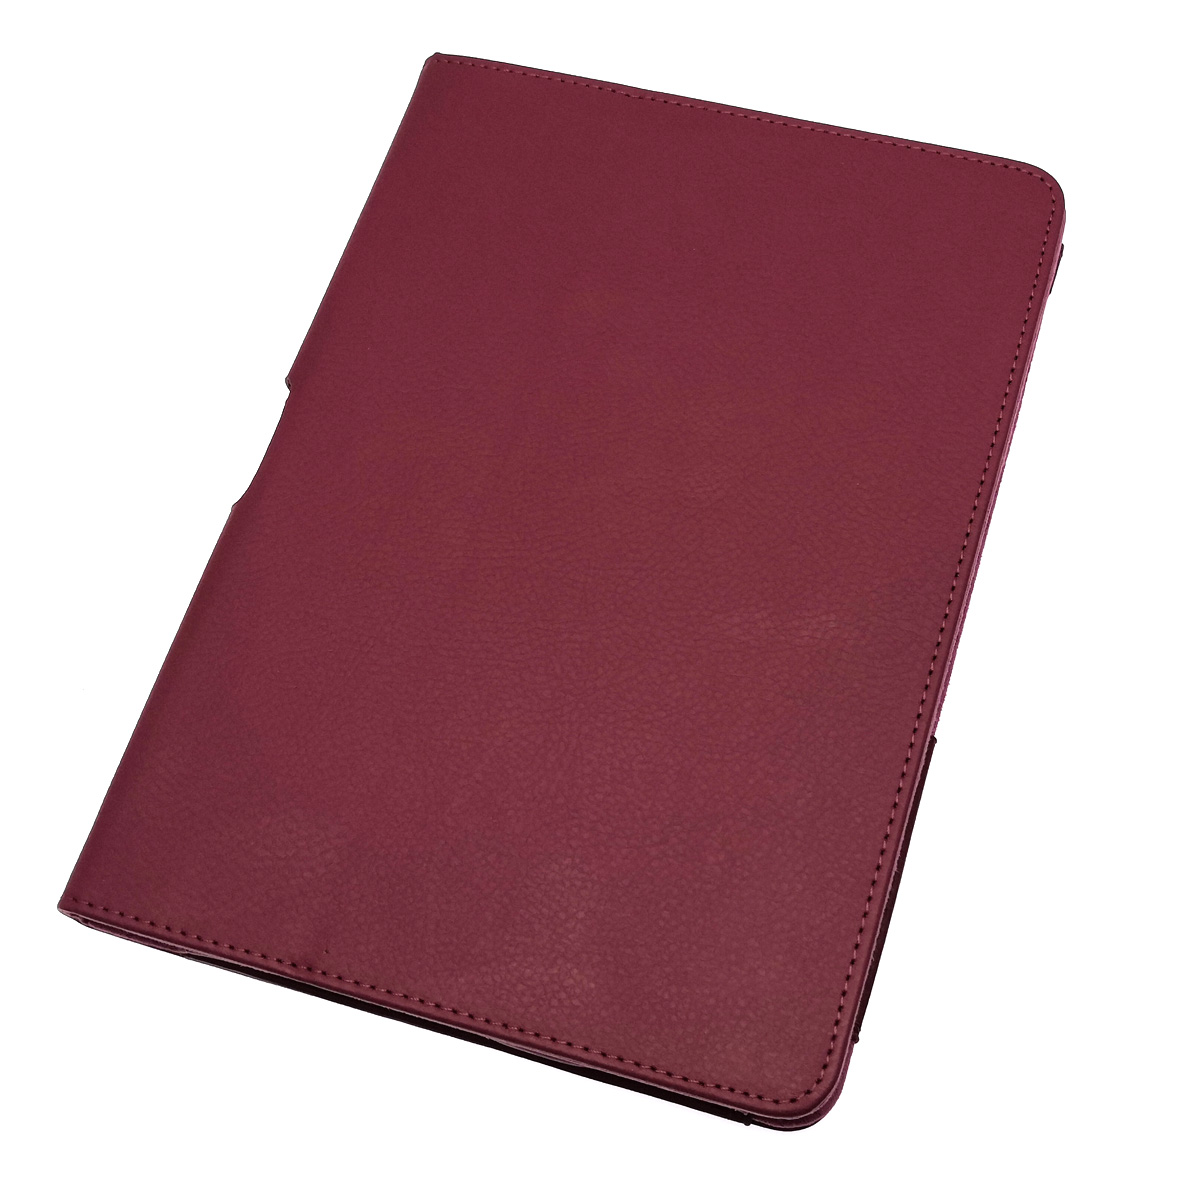 Чехол книжка для SAMSUNG Galaxy Tab 2 10.1 (P5100, P5110), экокожа, цвет малиновый.